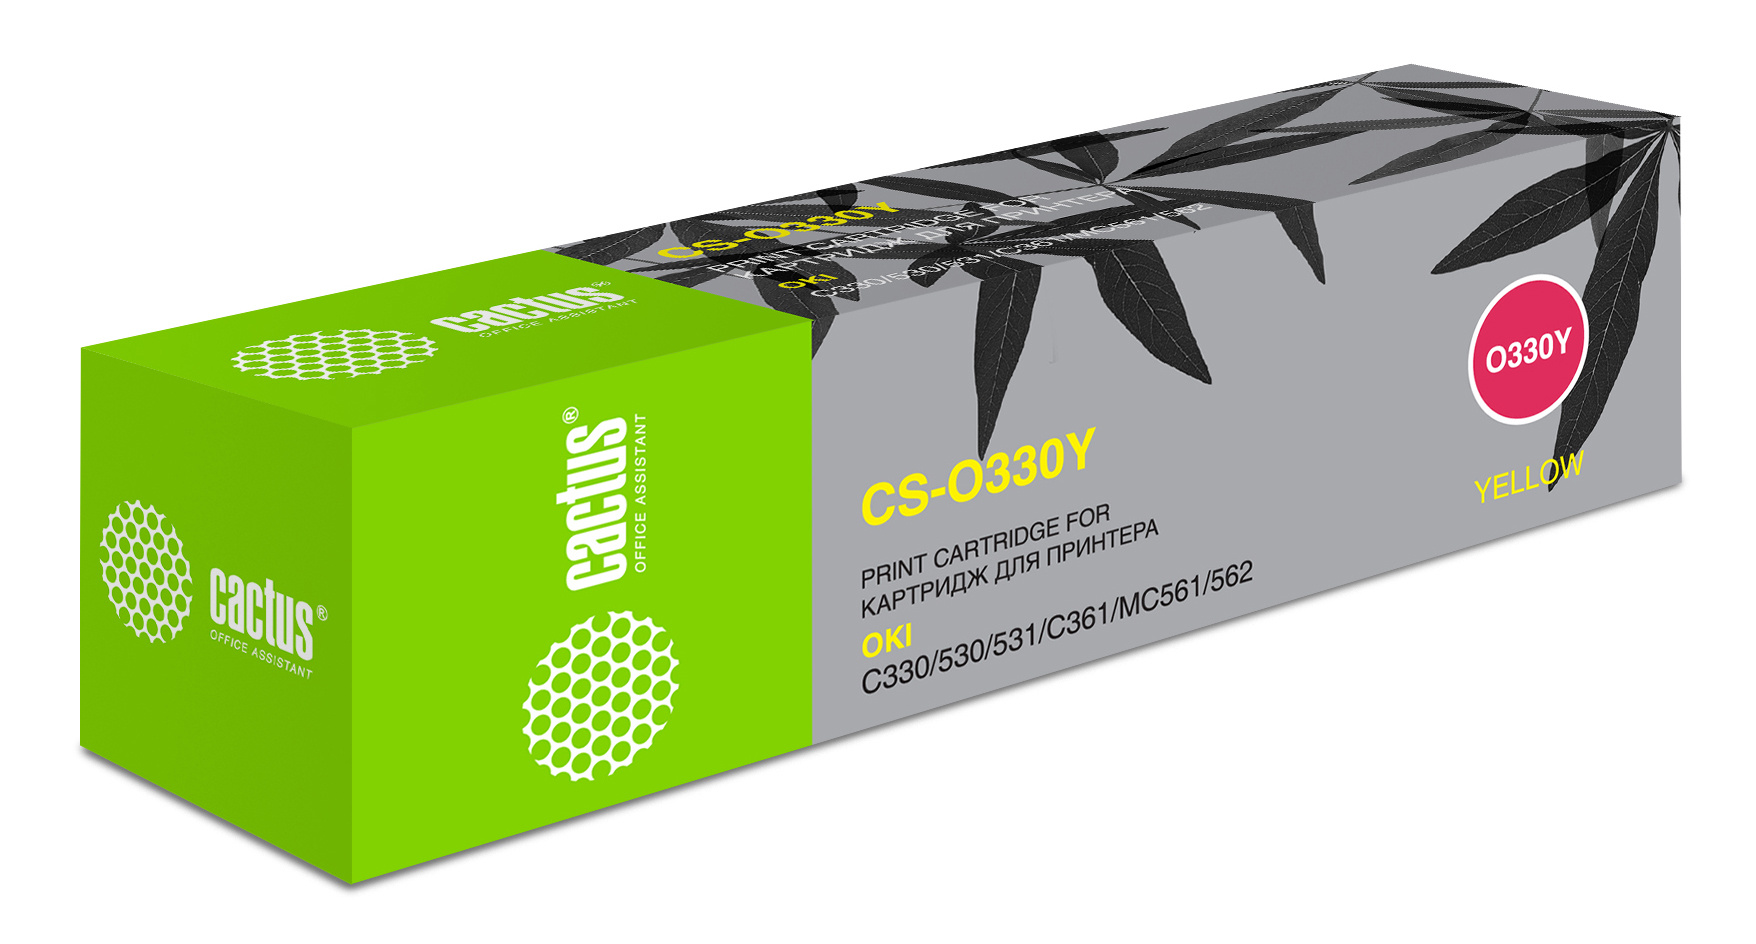 Картридж лазерный Cactus 44469714 CS-O330Y желтый (3000стр.) для Oki C330/C530 cactus картридж лазерный cs o530y желтый 5000стр для oki c530